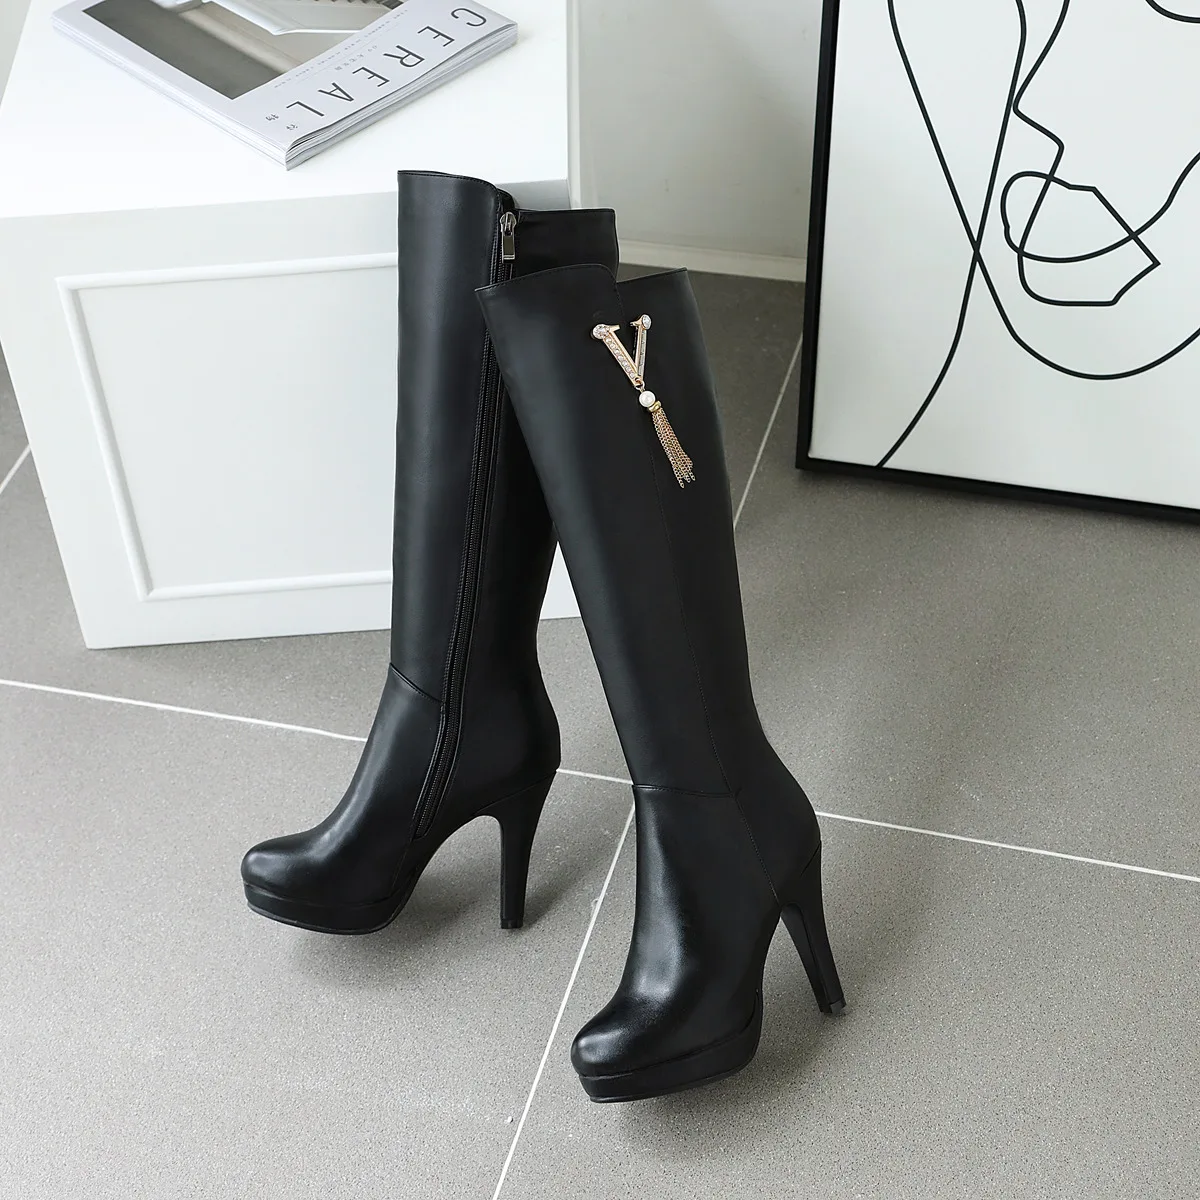 Г. Сапоги женские зимние сапоги до колена высокие сапоги на платформе и высоком каблуке 10,5 см Большой размер 43, пикантная обувь с круглым носком женская обувь черного цвета